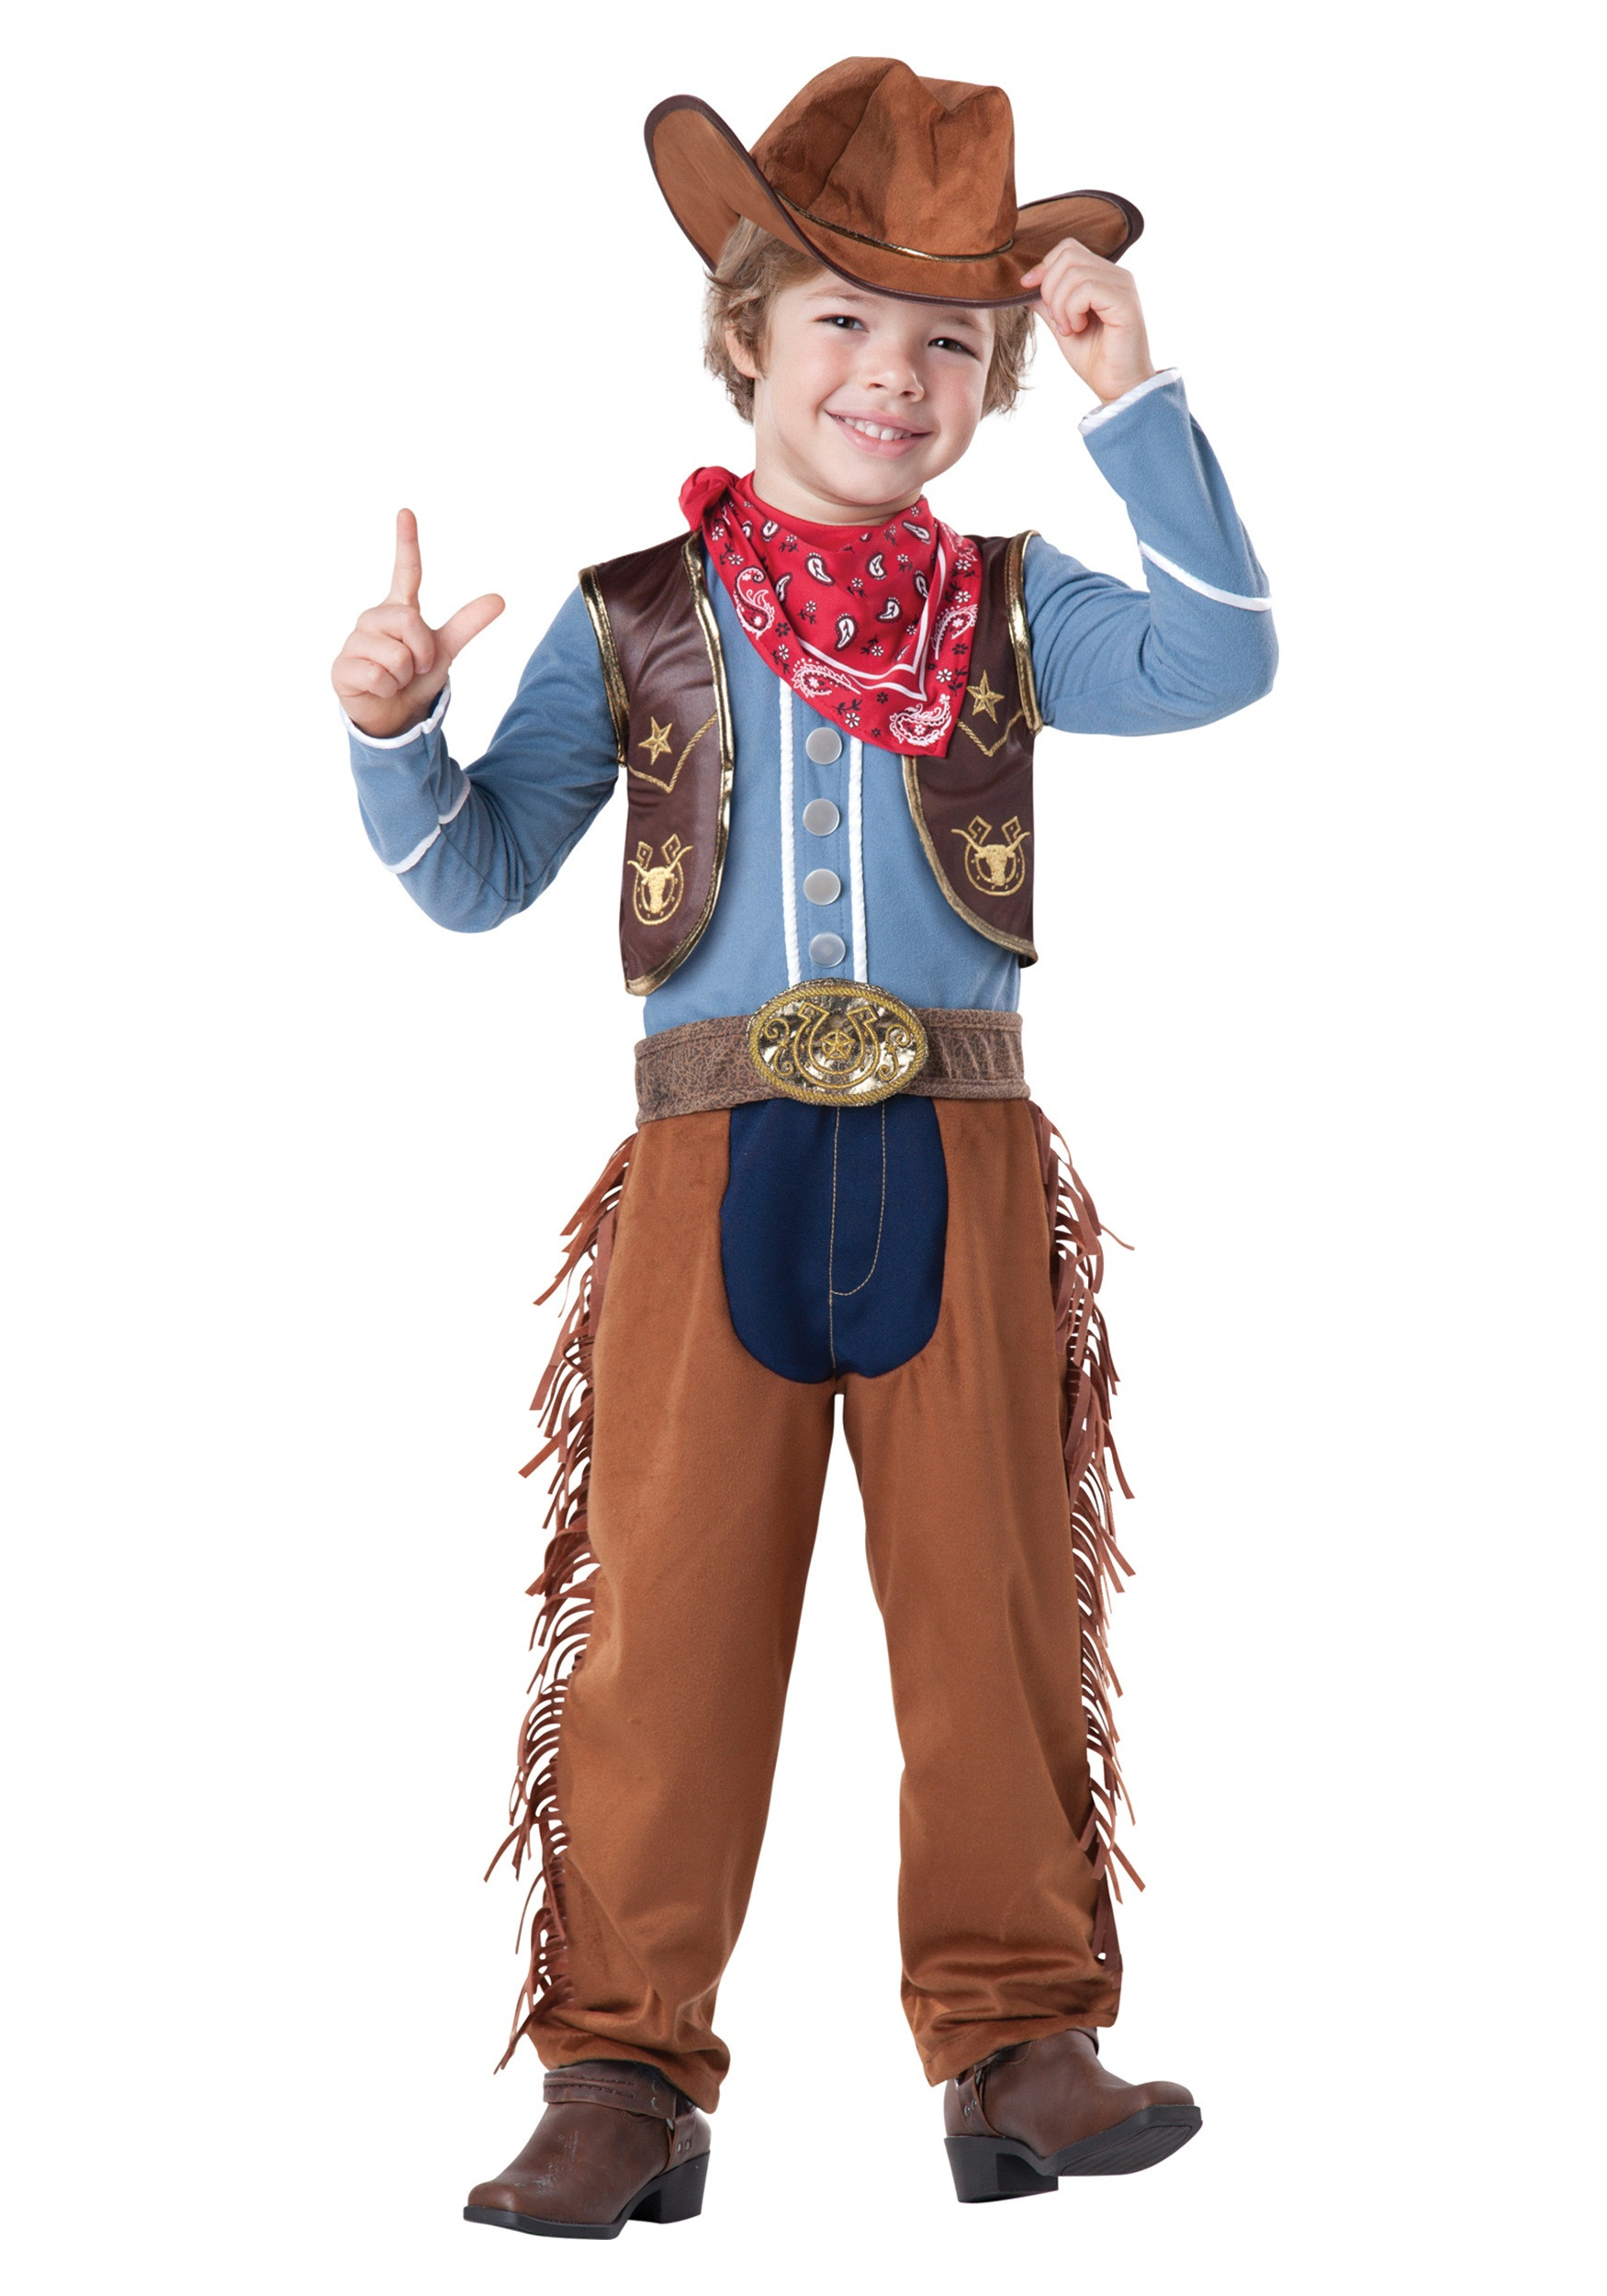 DIY Toddler Cowboy Costume
 Toddler Boy Cowboy Costume